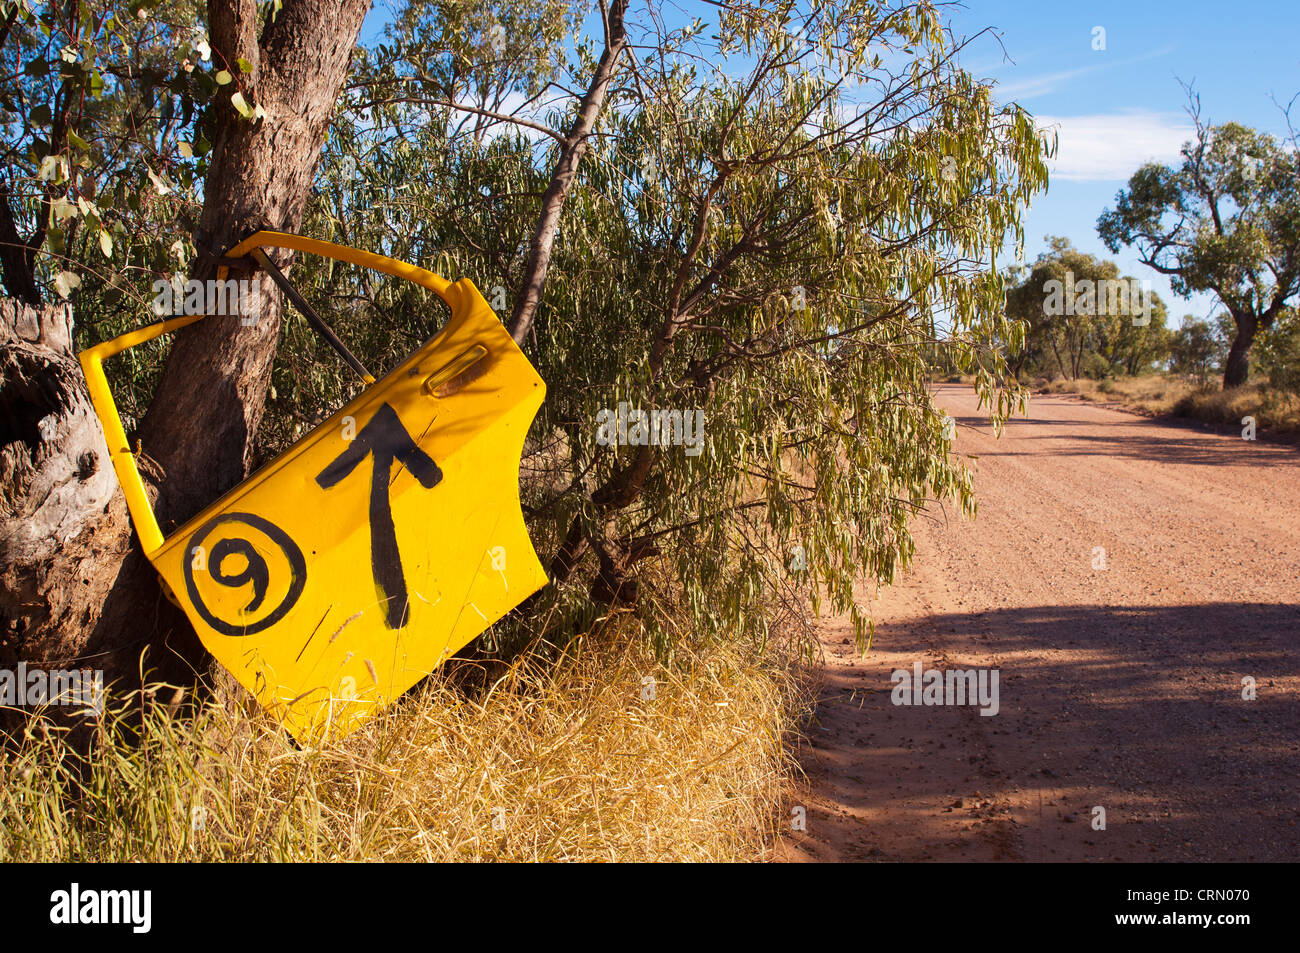 Vieille voiture jaune utilisé comme porte une plaque de rue dans l'arrière-pays australien Banque D'Images